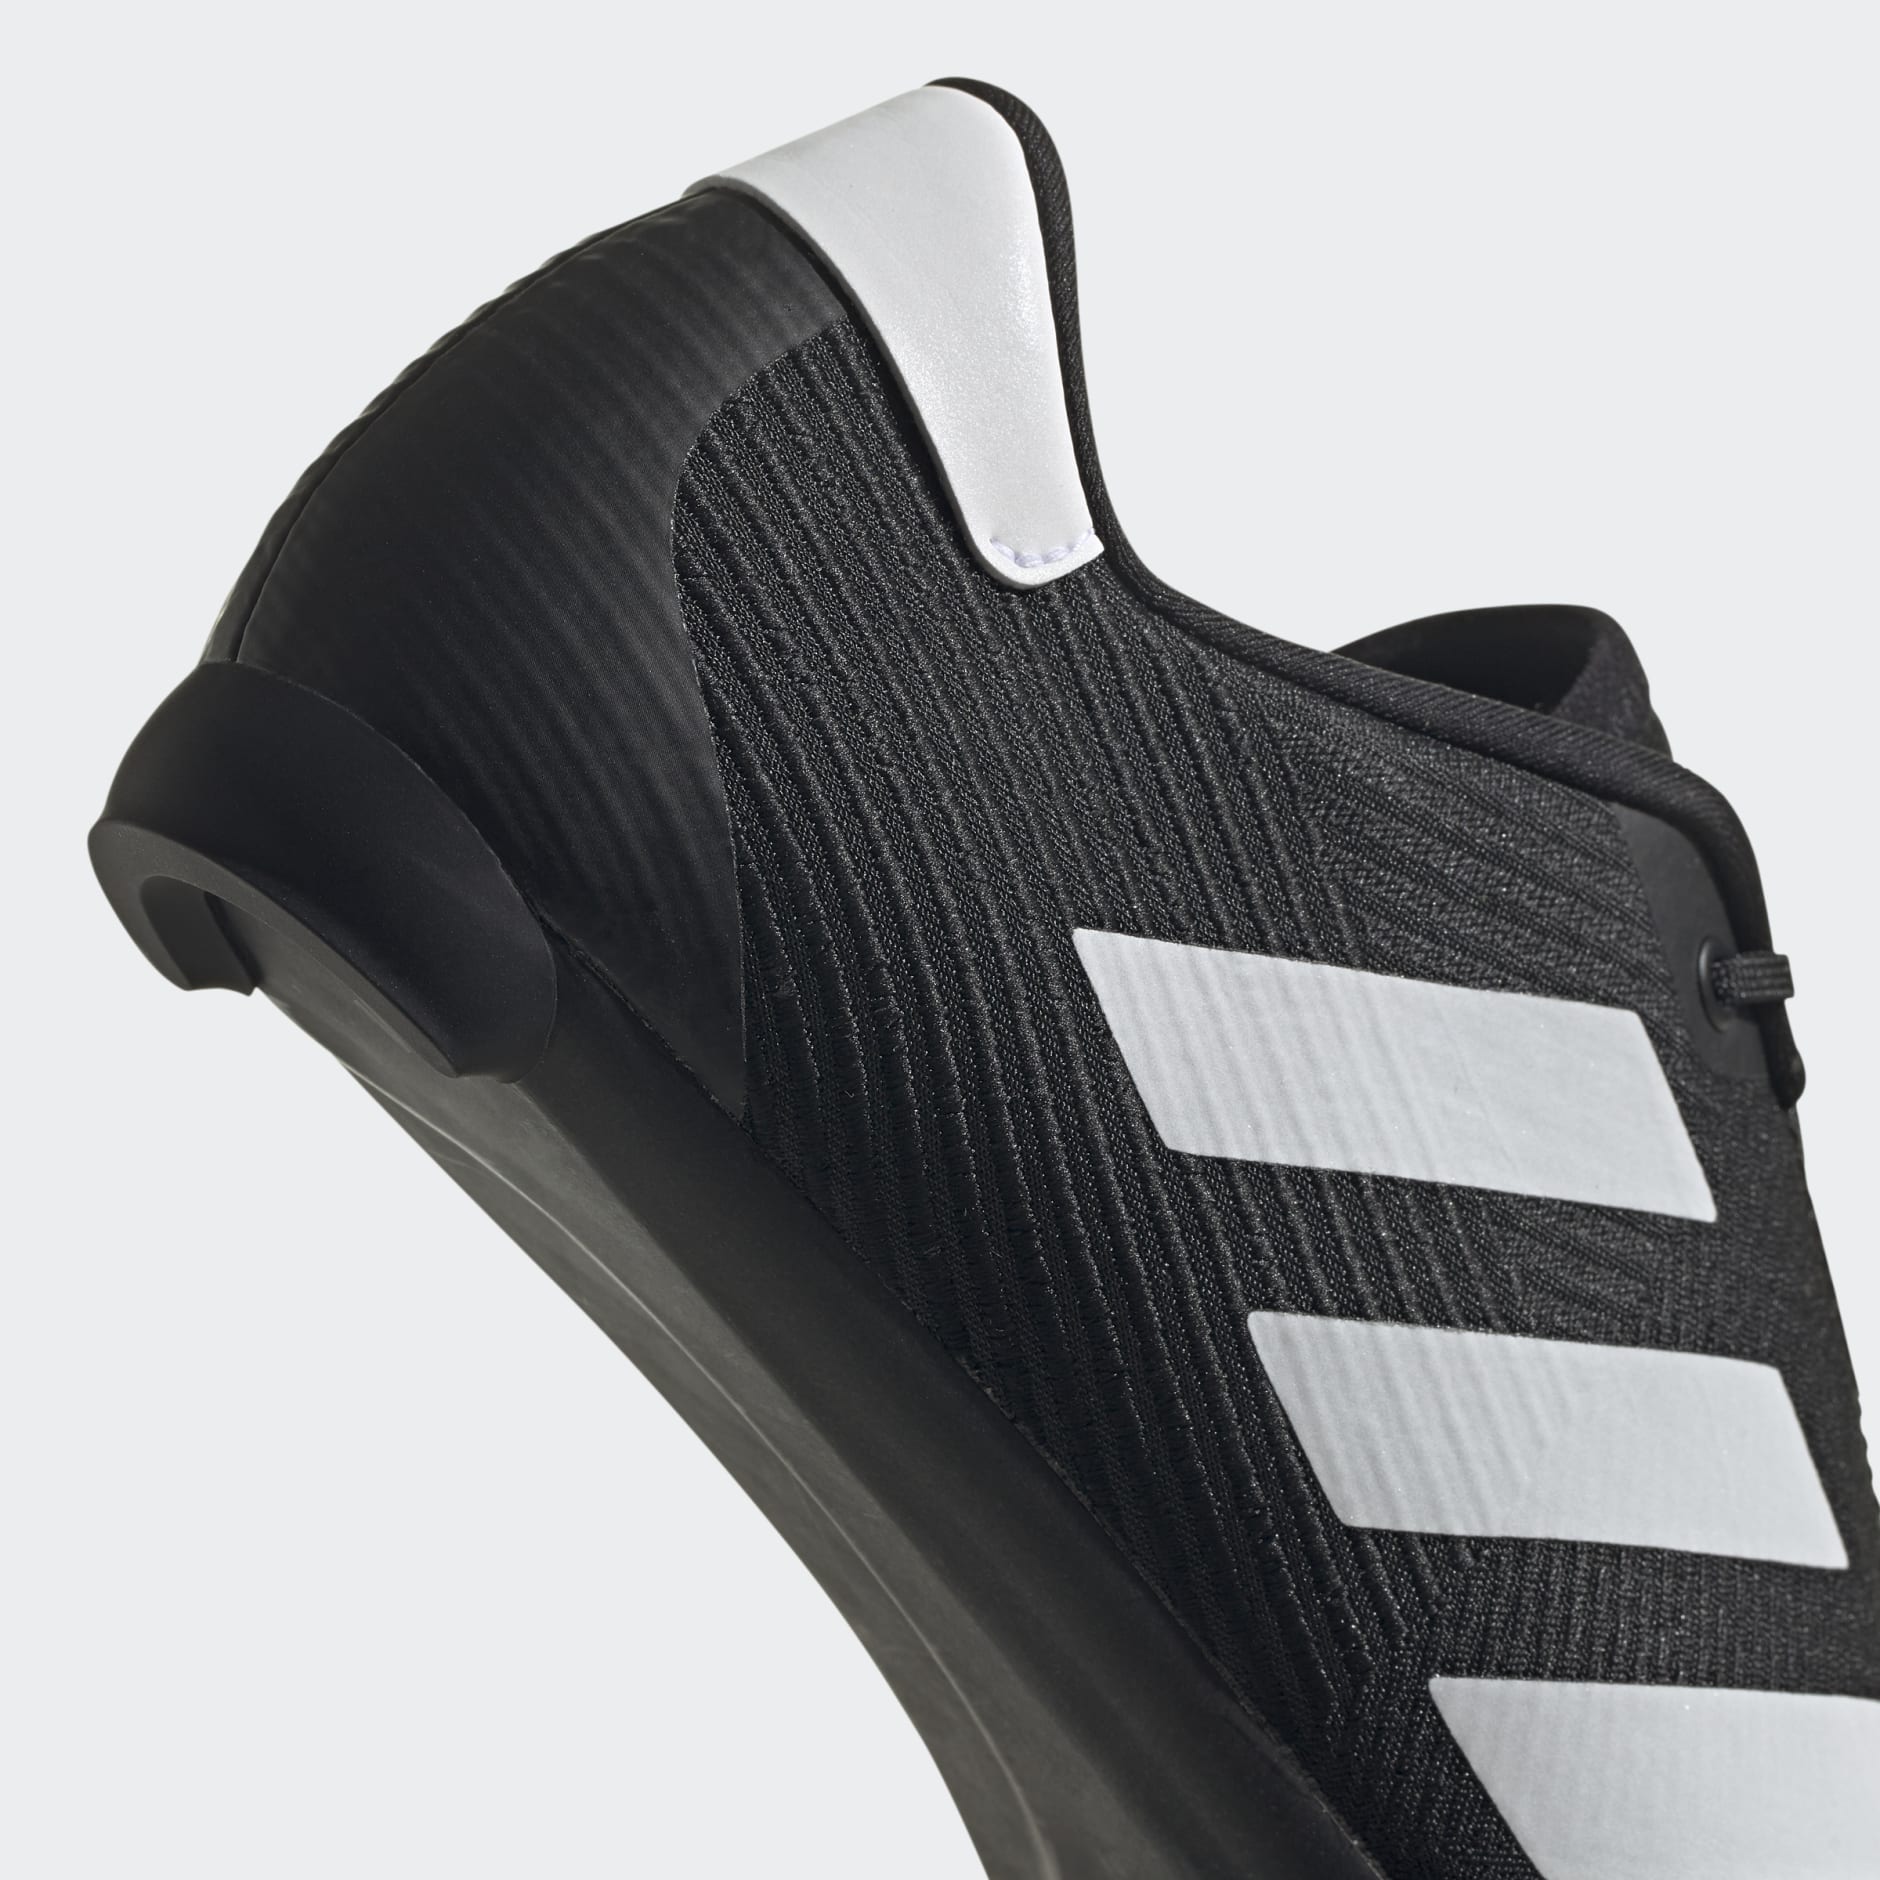 misil interior Año adidas The Road Cycling Shoes - Black | adidas SA